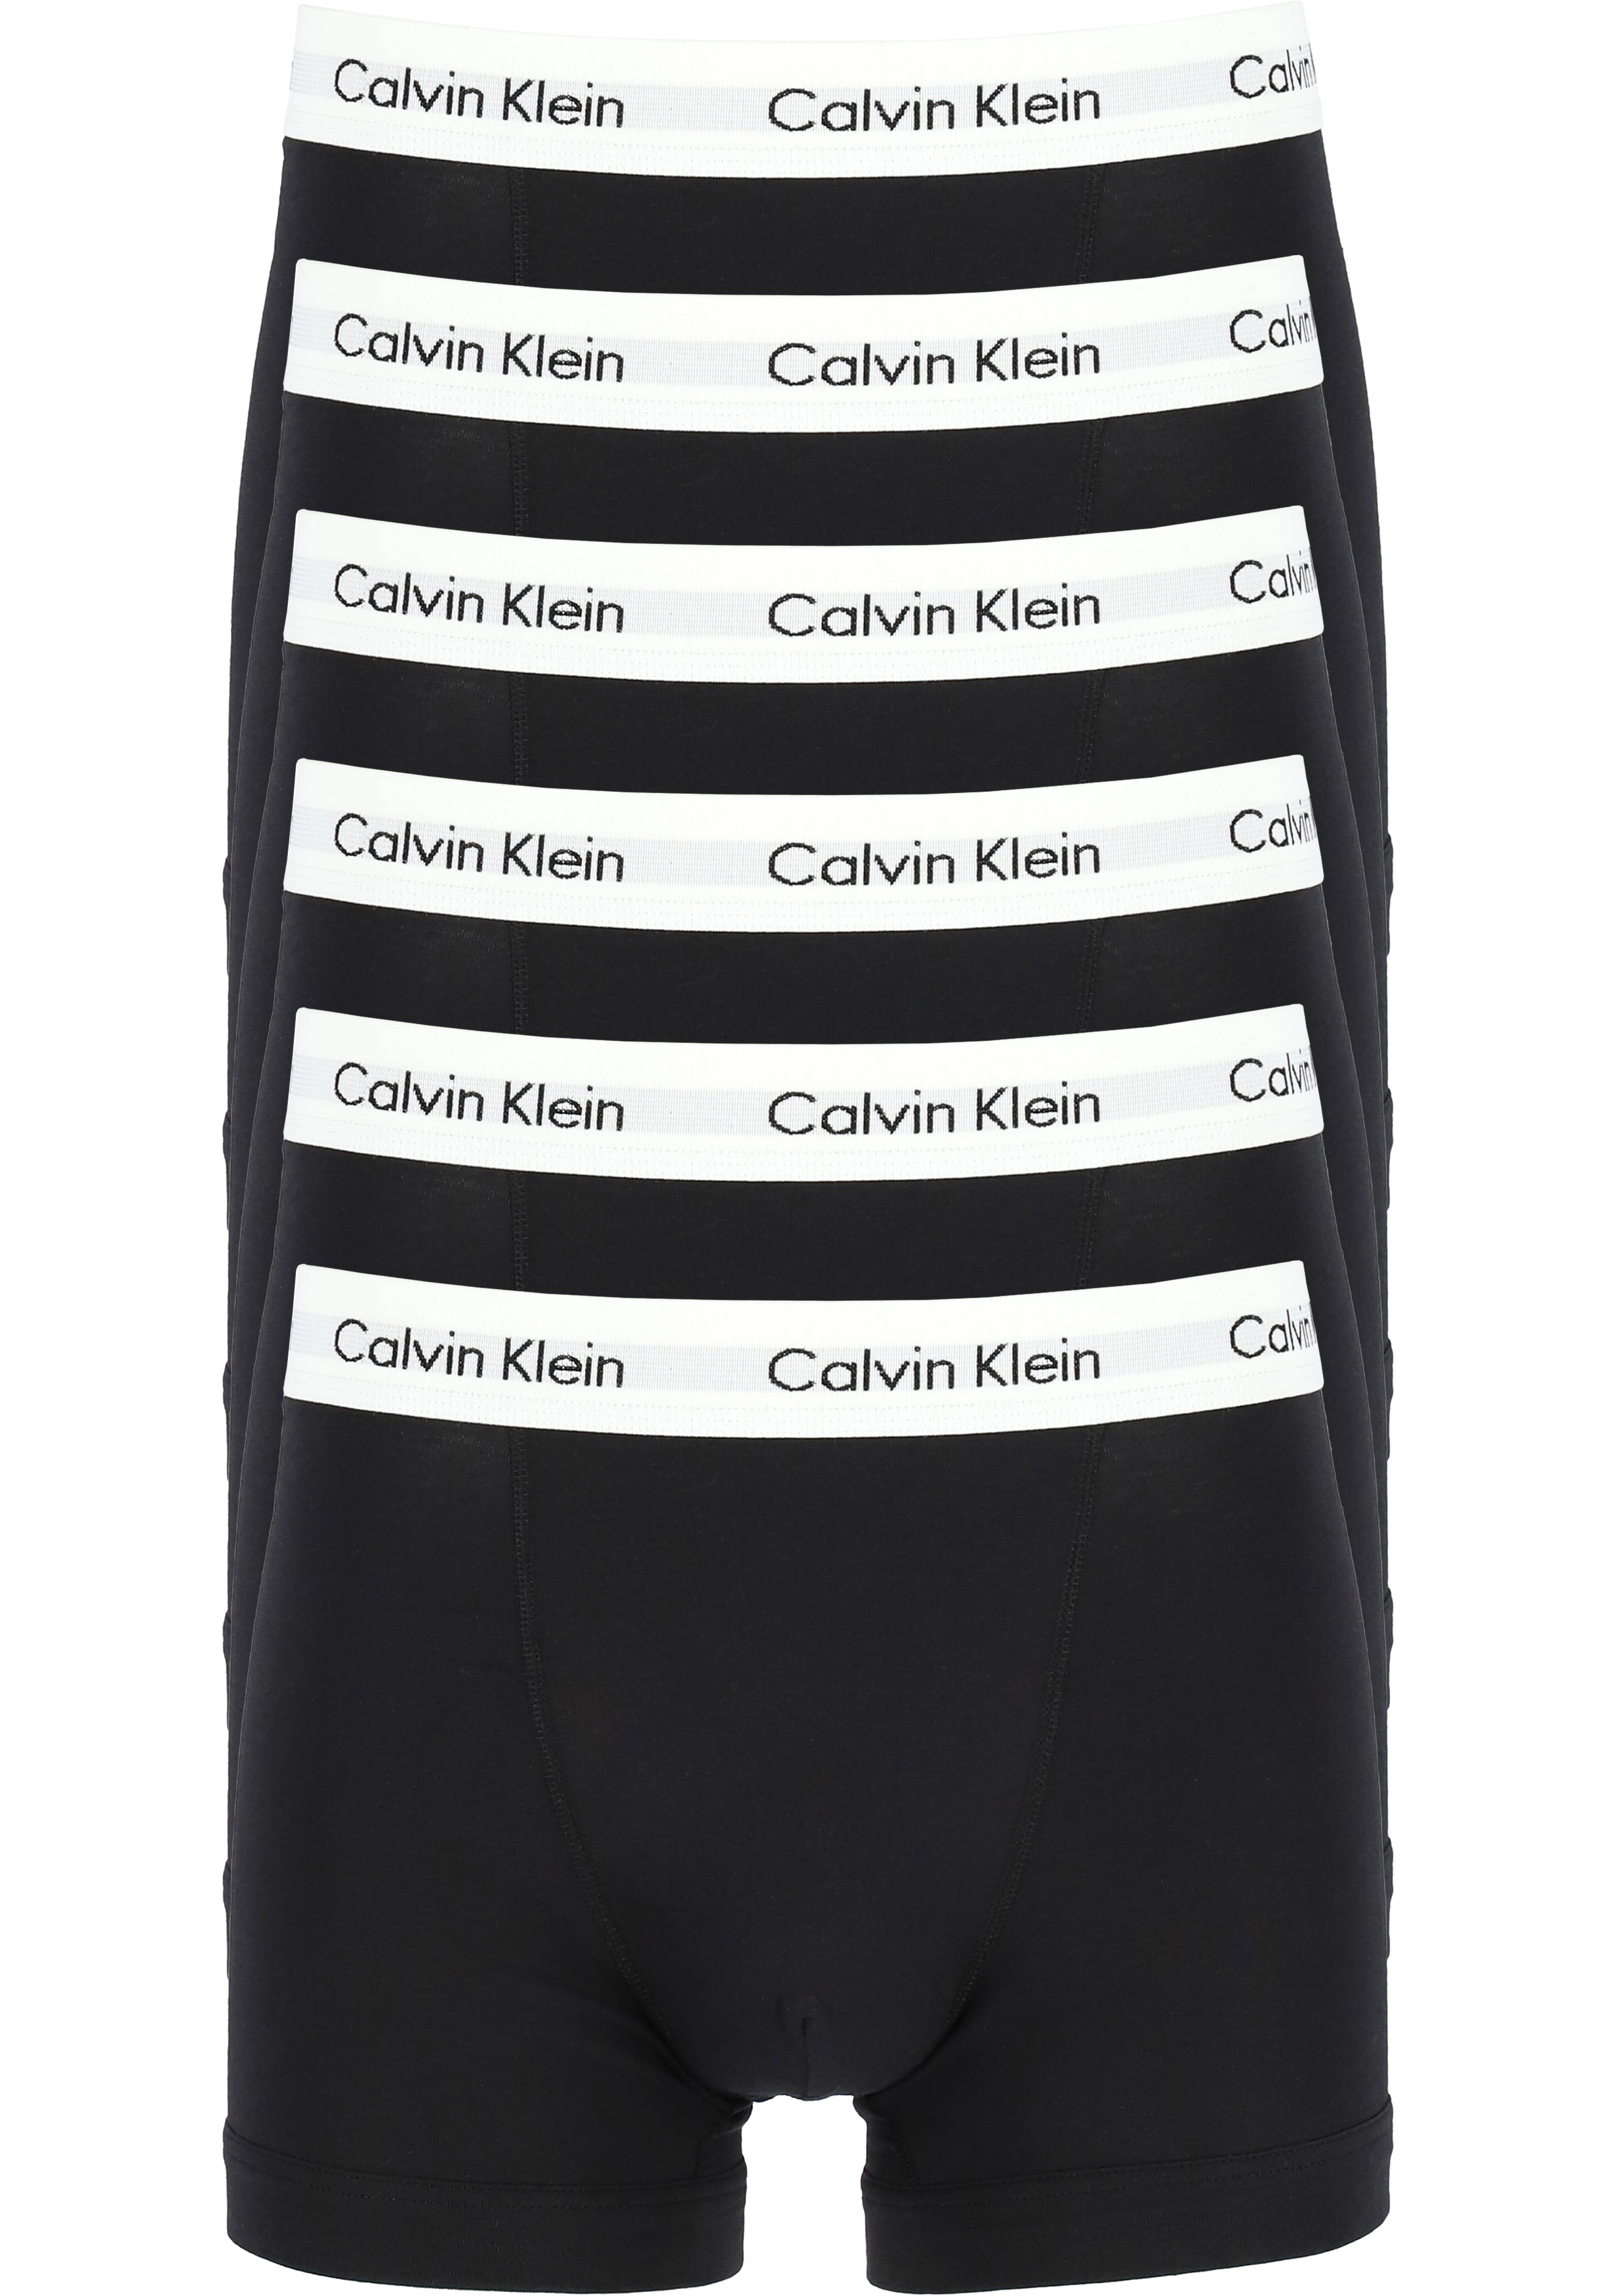 Bepalen patroon Vermoorden Actie 6-pack: Calvin Klein trunks, heren boxers normale lengte, zwart -  Shop de nieuwste voorjaarsmode